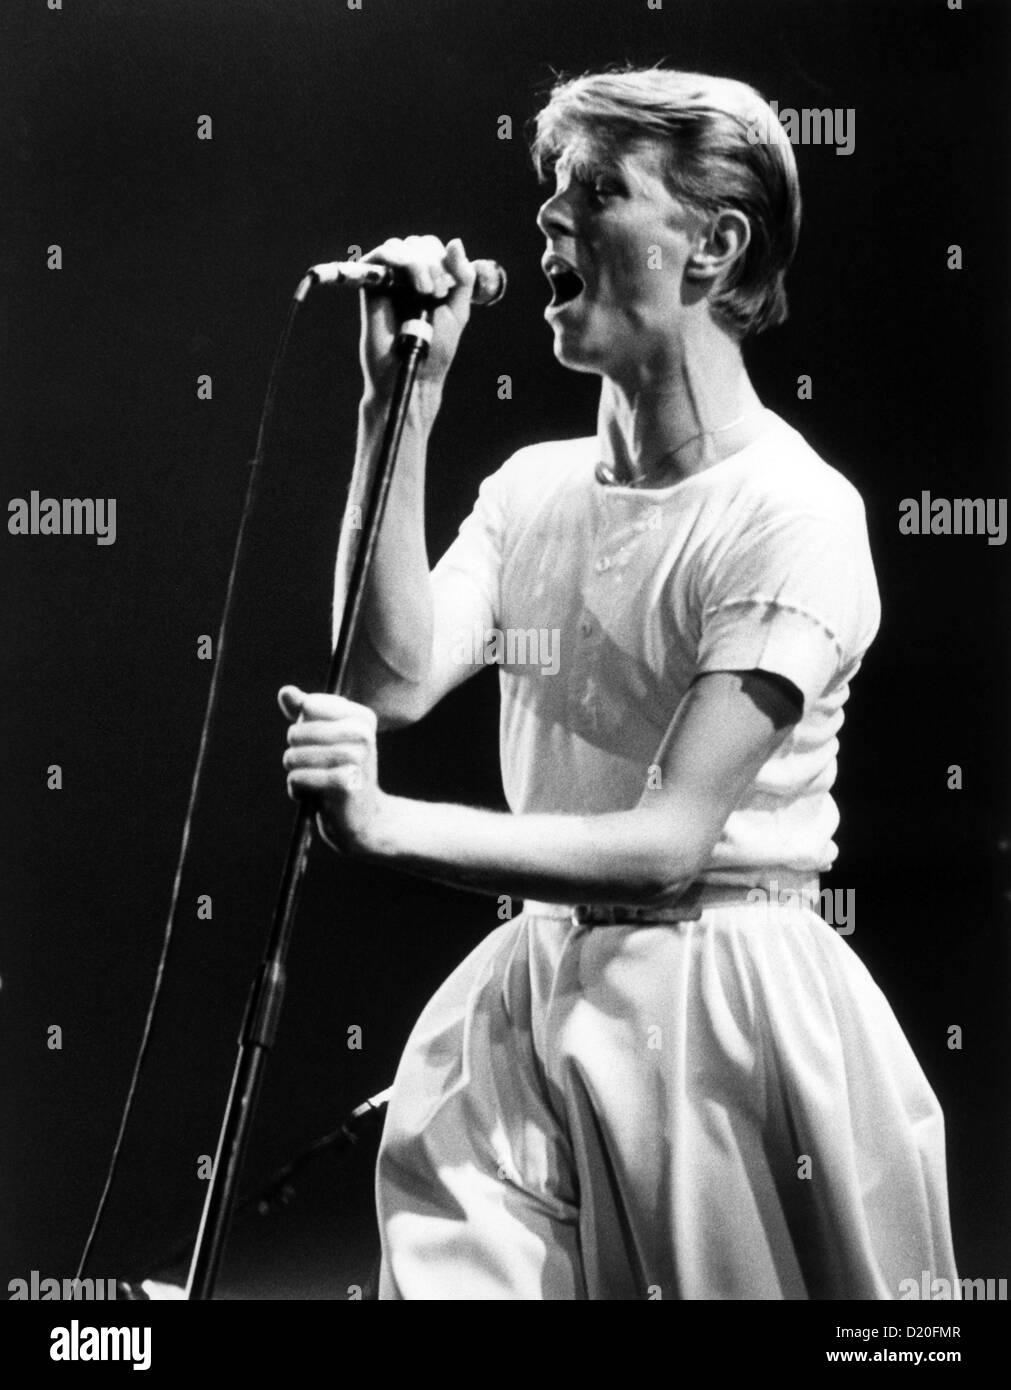 David Bowie in concerto il 14 maggio 1978 a la Festhalle di Francoforte - Germania. Foto Stock